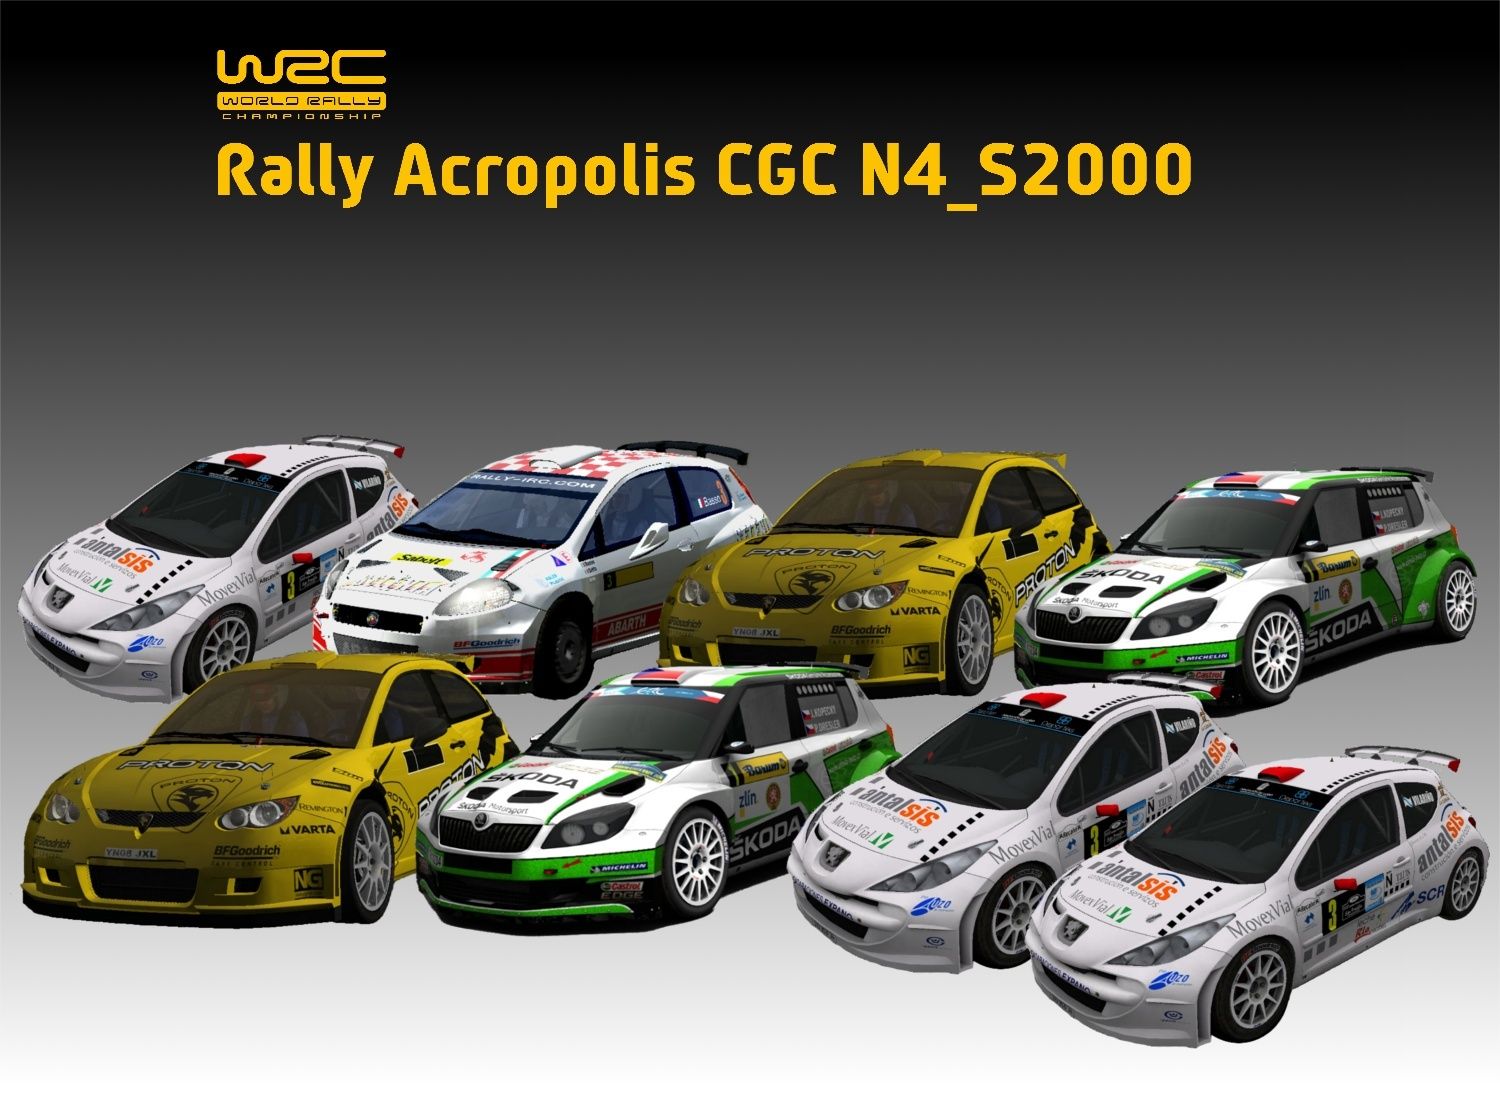 Rally Acrópolis    Gravel  N4_2000      13 y 16 de agosto 2014  S2000_10